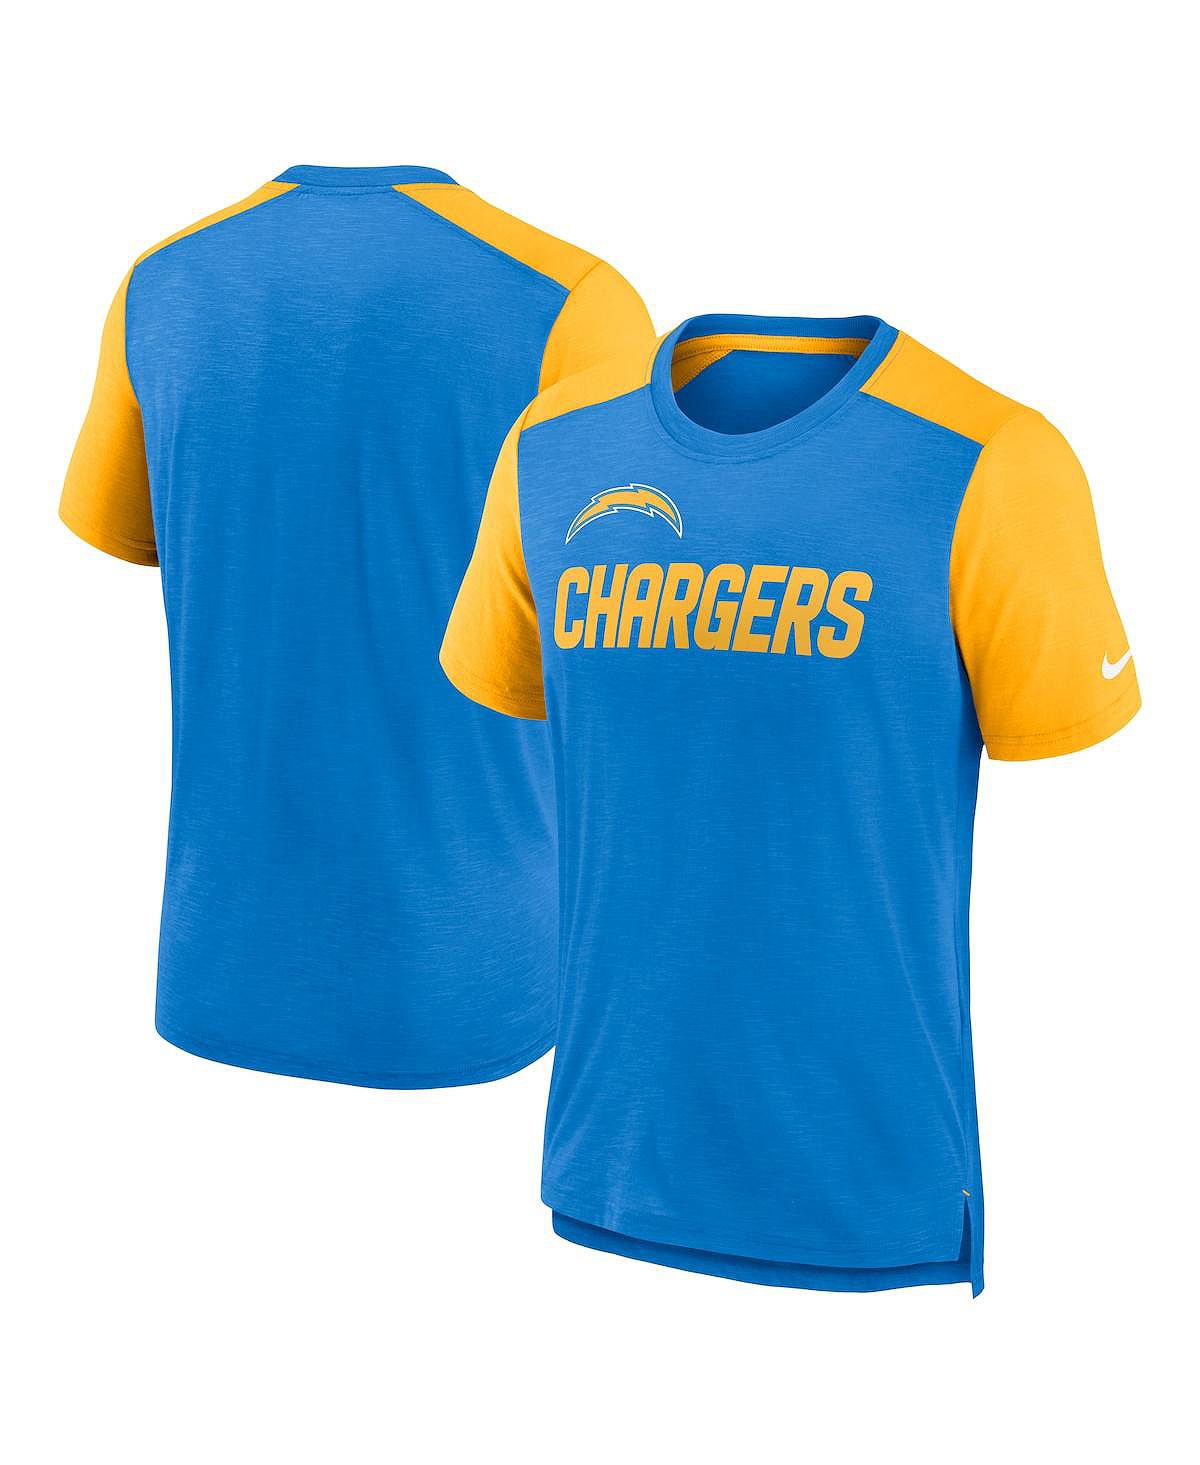 Мужская футболка с цветным блоком «Порошково-синяя и золотая с меланжем» Los Angeles Chargers с названием команды Nike мужская черная футболка big and tall los angeles chargers color pop fanatics